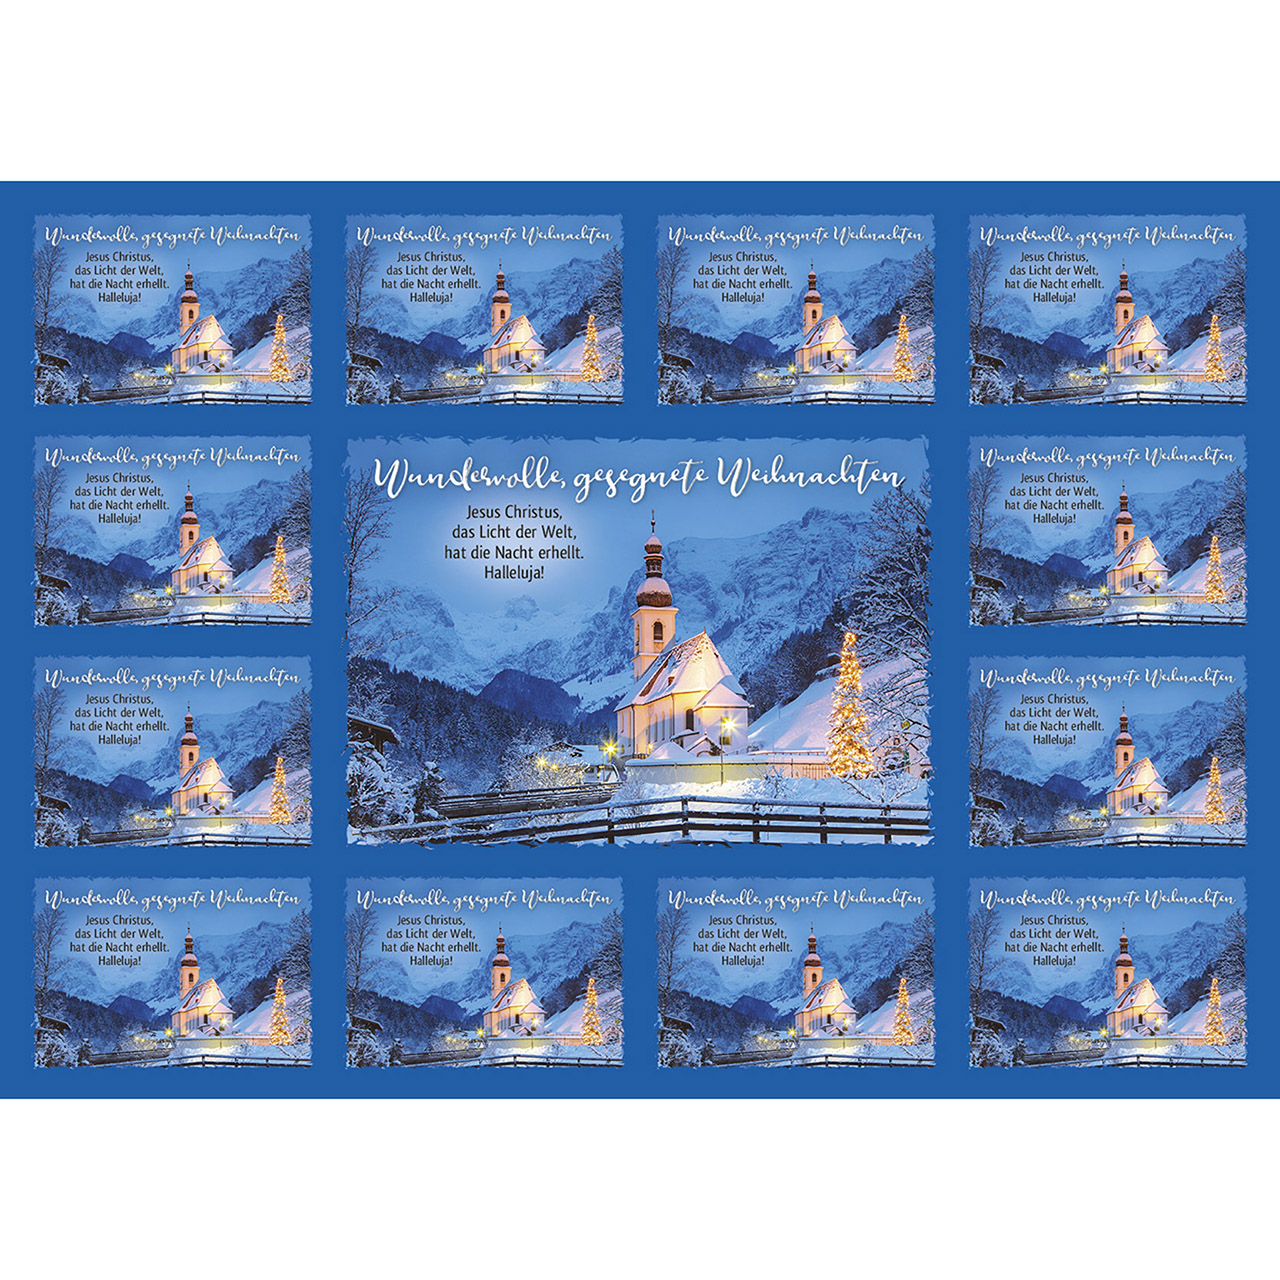 Postkarten mit Aufklebern - Wundervolle, gesegnete Weihnachten